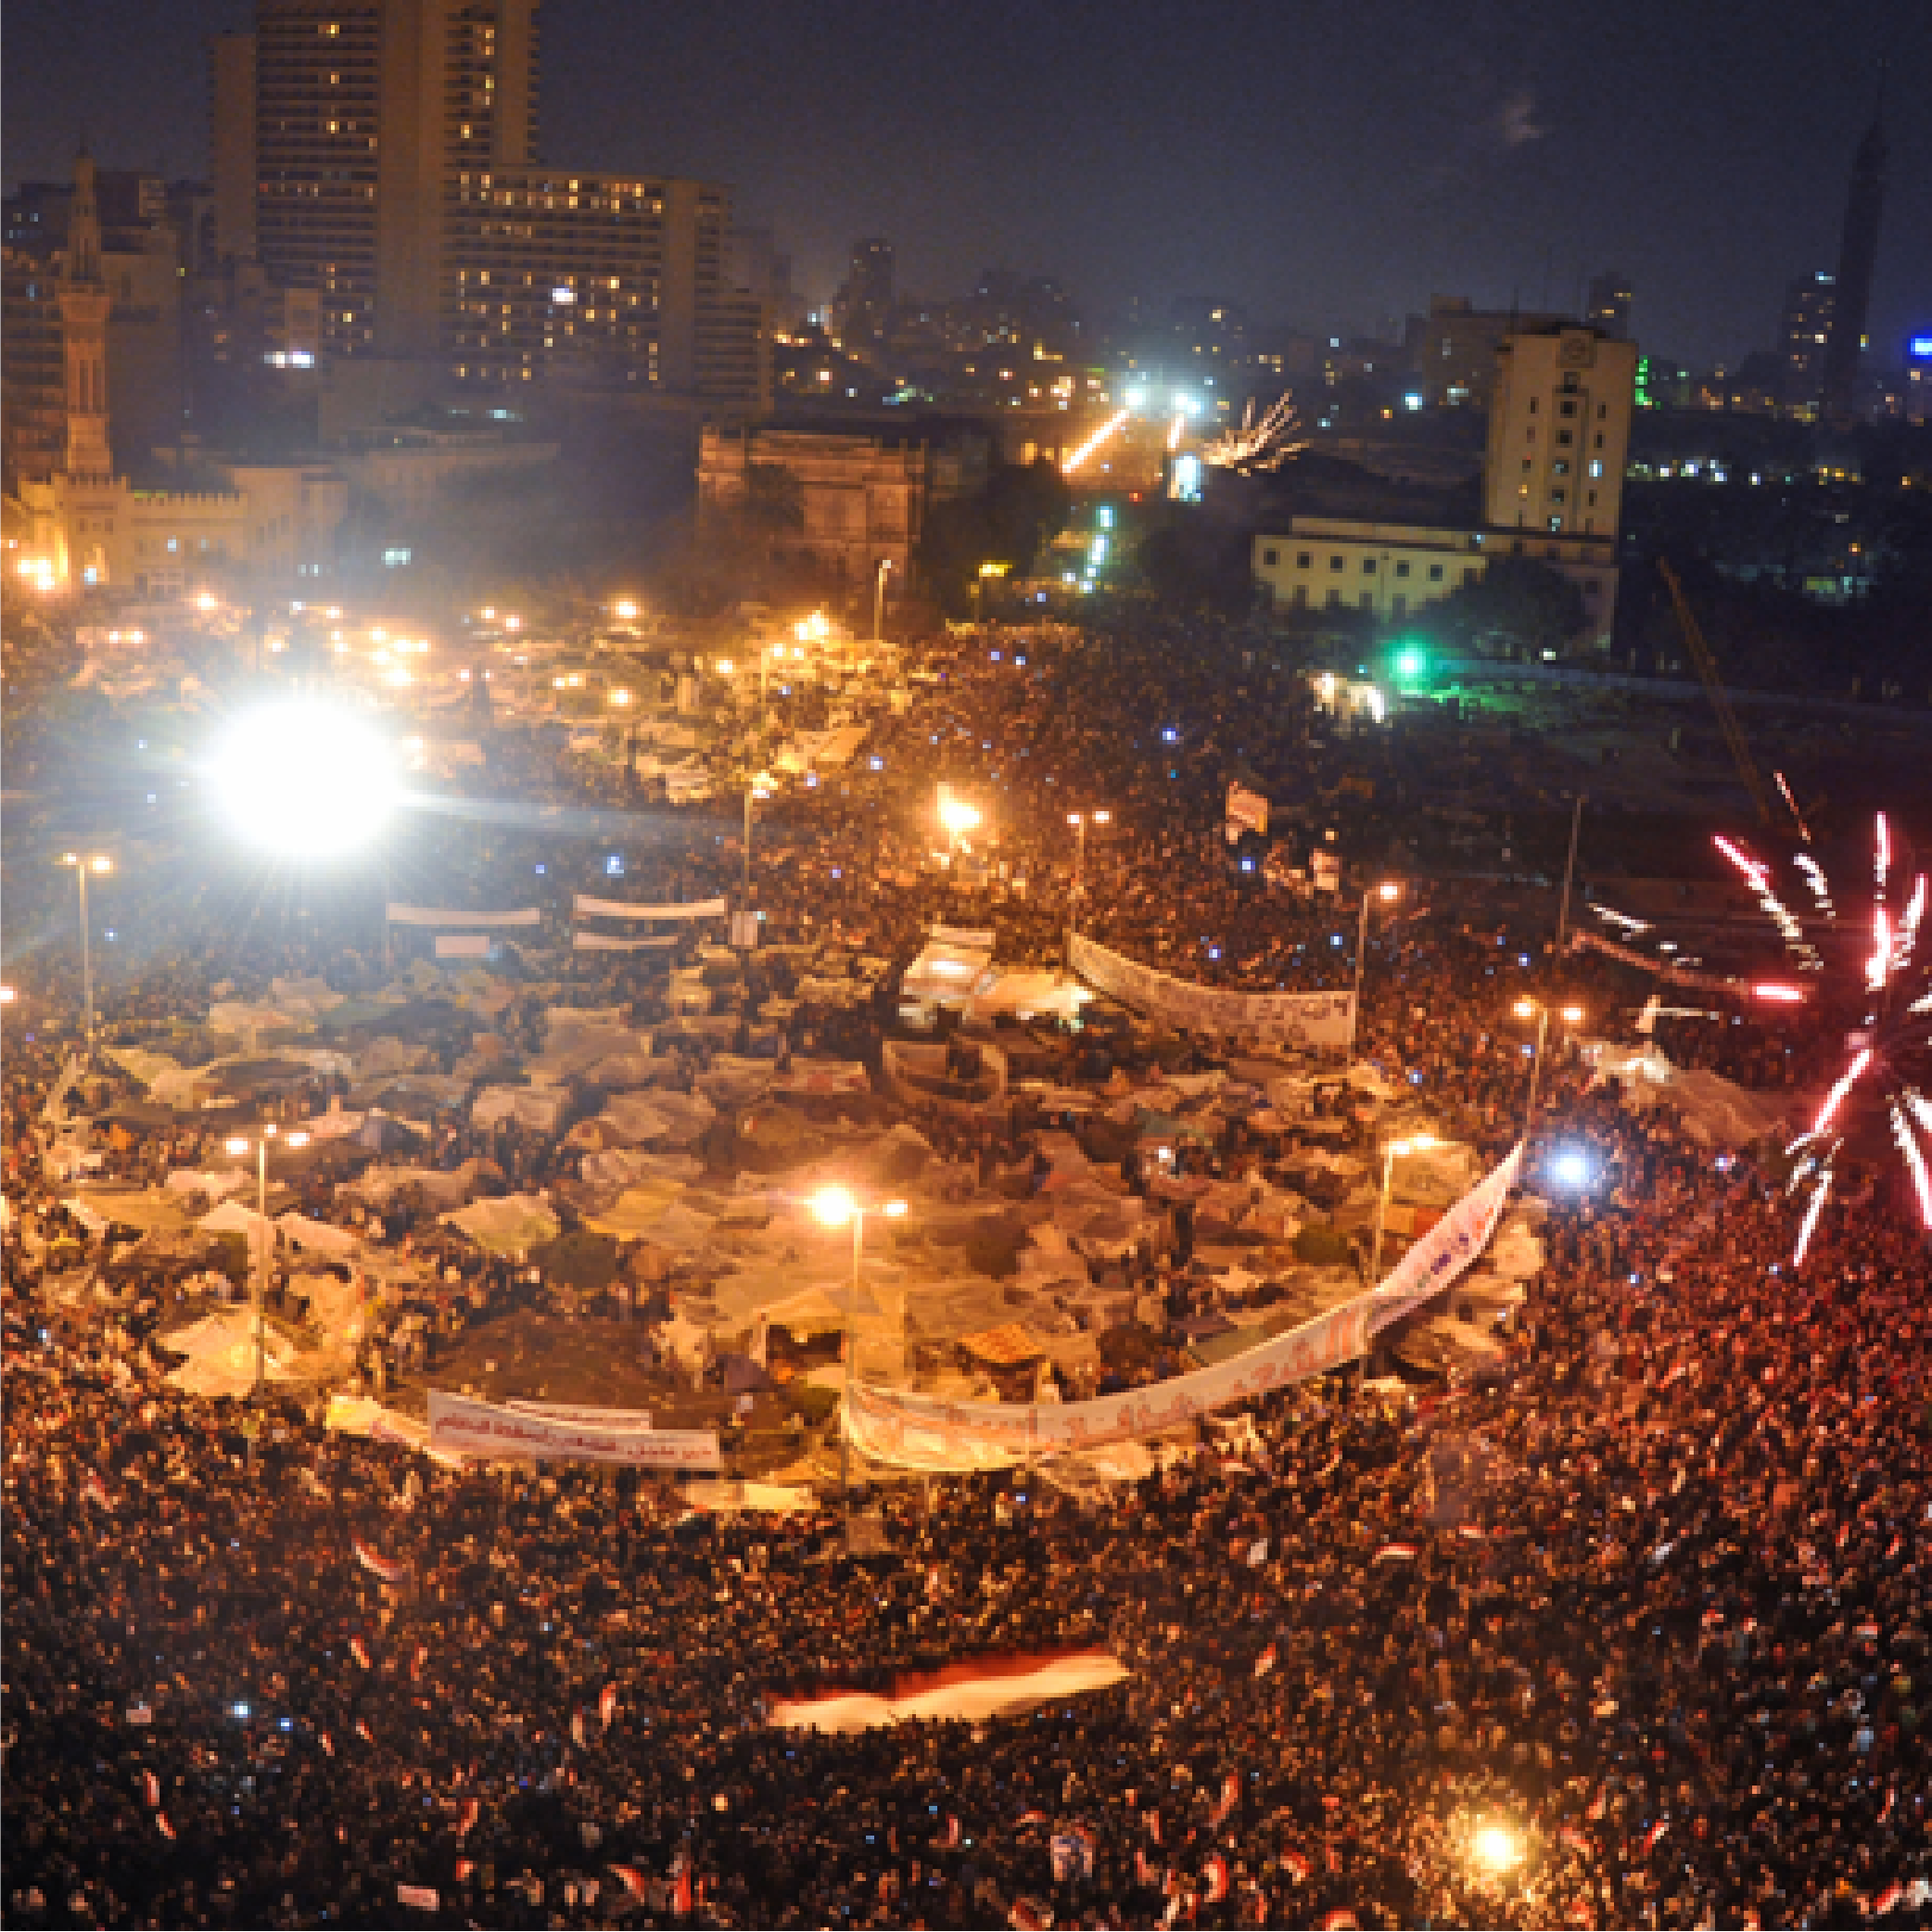 阿拉伯之春是由阿拉伯世界中的民眾透過網路起義，要求推翻專制政體的行動。